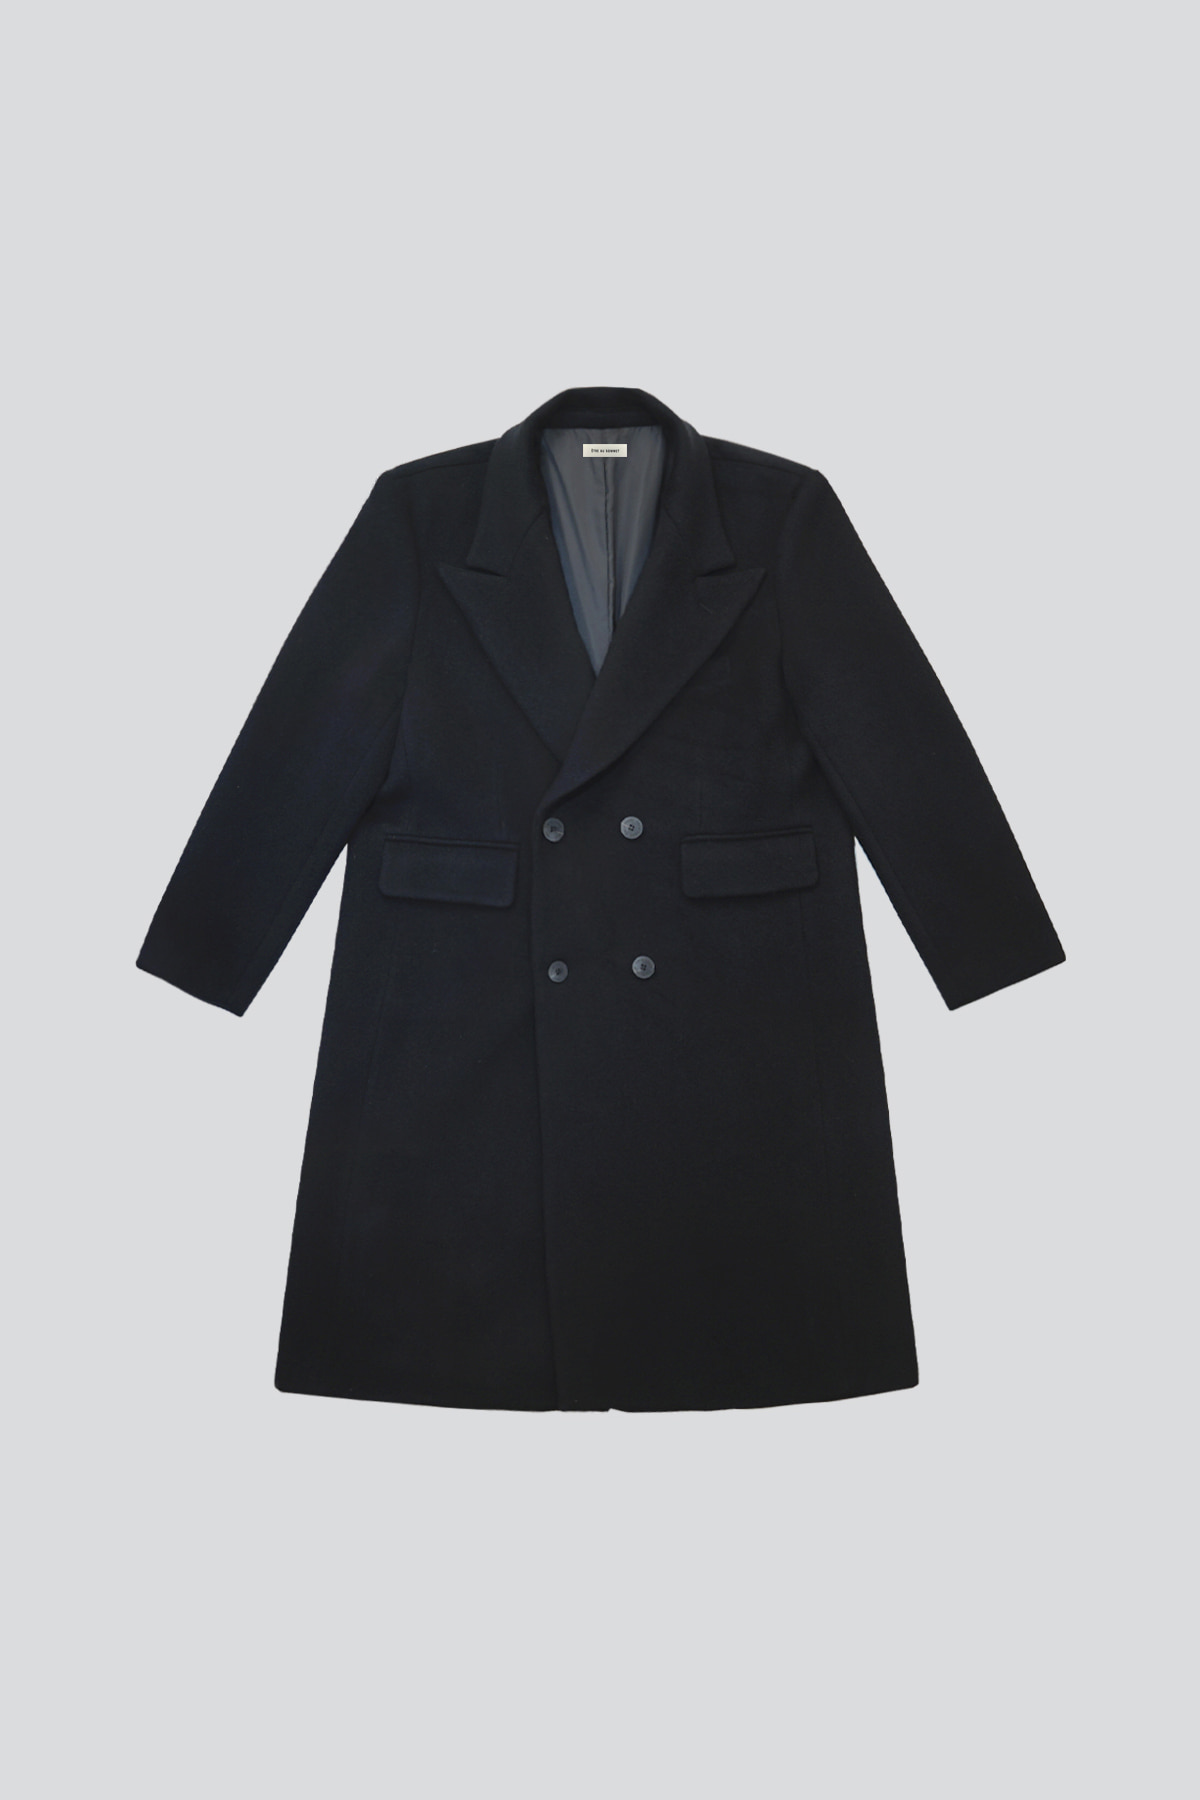 Oversized Cashmere Wool Jacket (Black/Unisex)